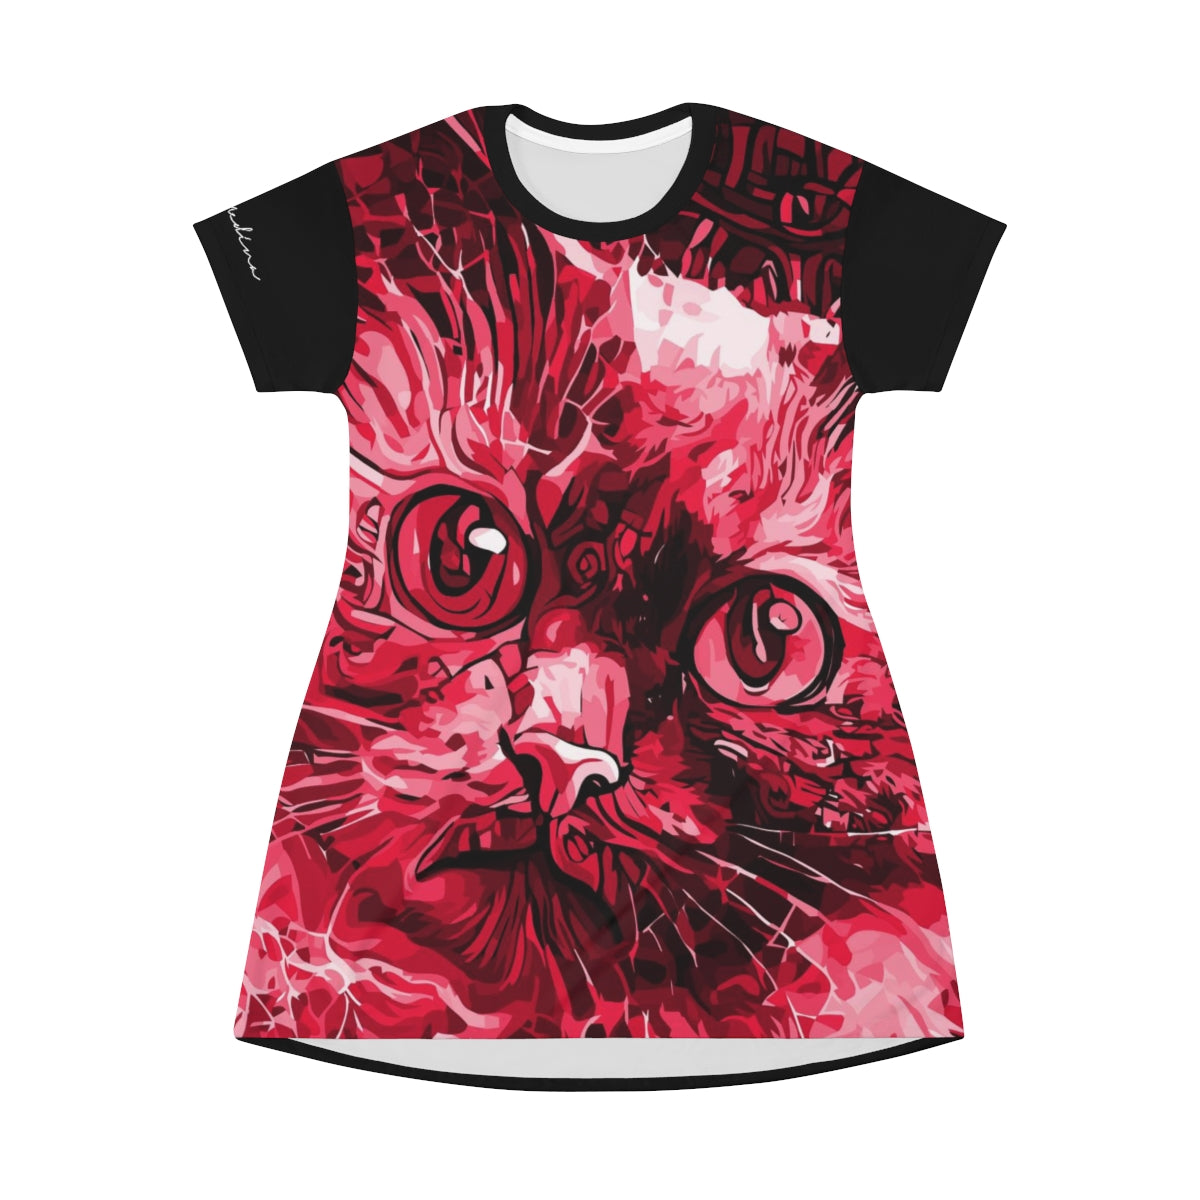 Shirtdress, Passionate Kitty